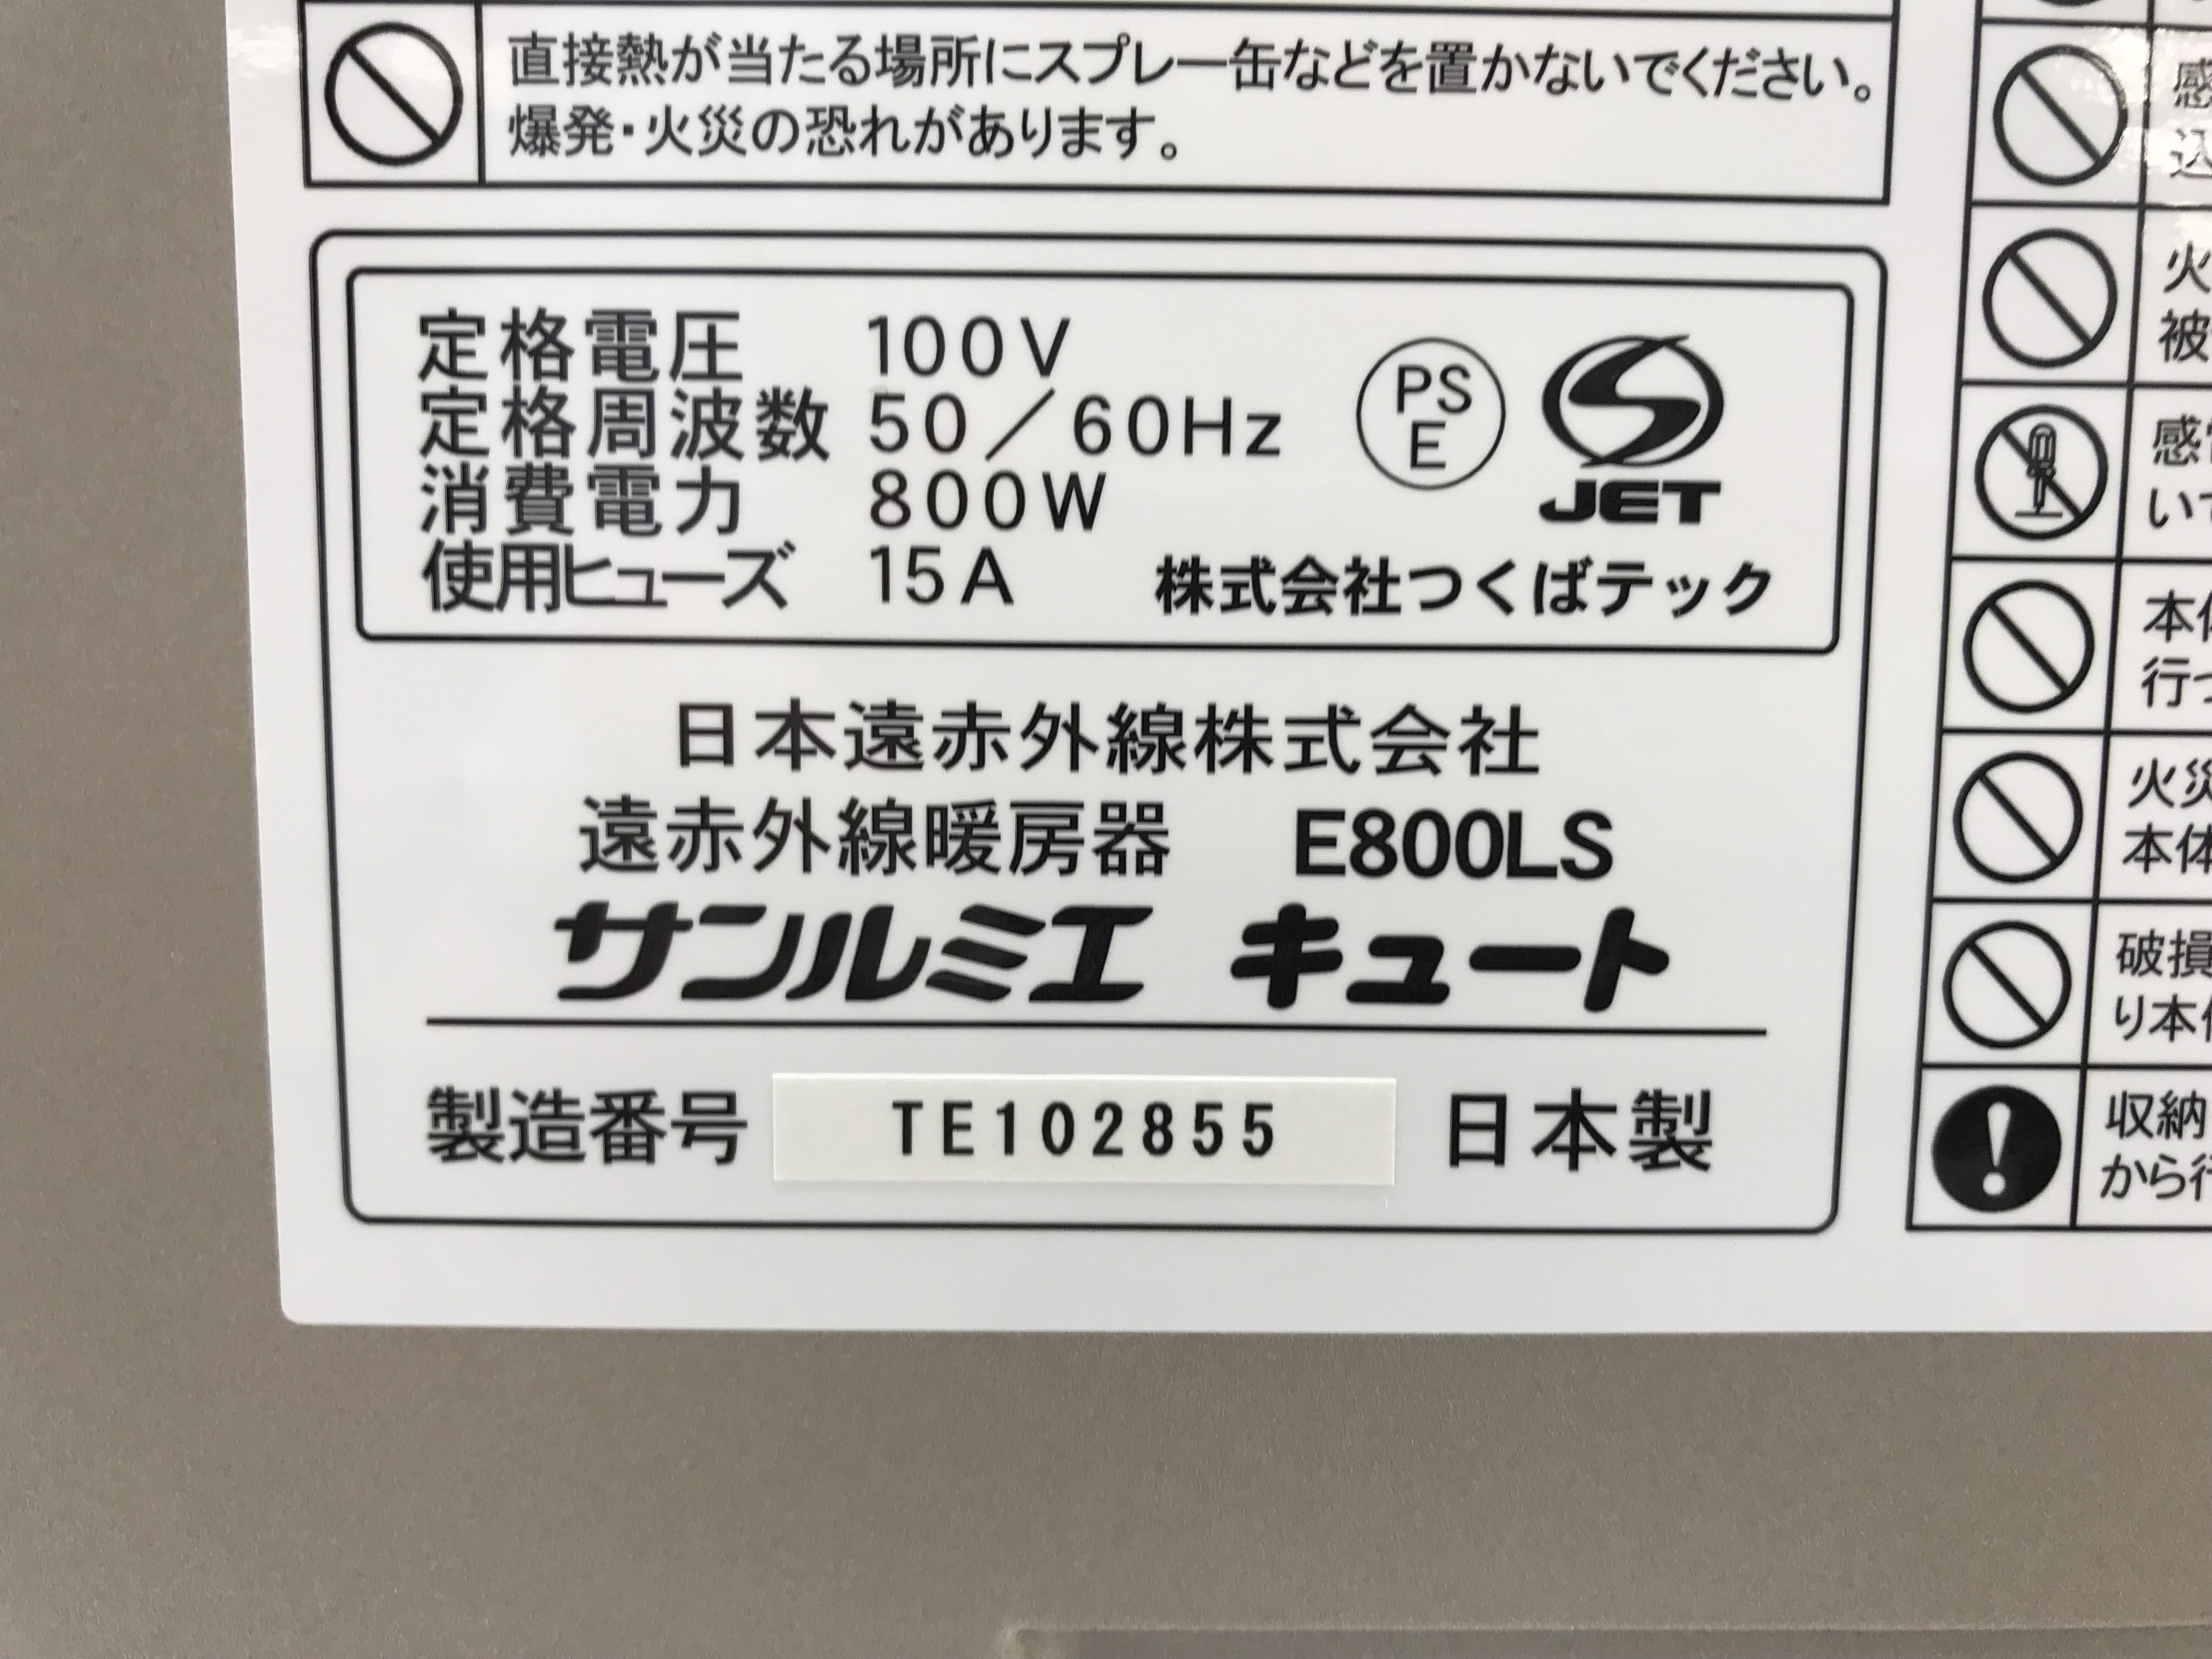 暖房器具 NEK 遠赤外線暖房器 サンルミエ キュート E800LS 伊勢市松阪市